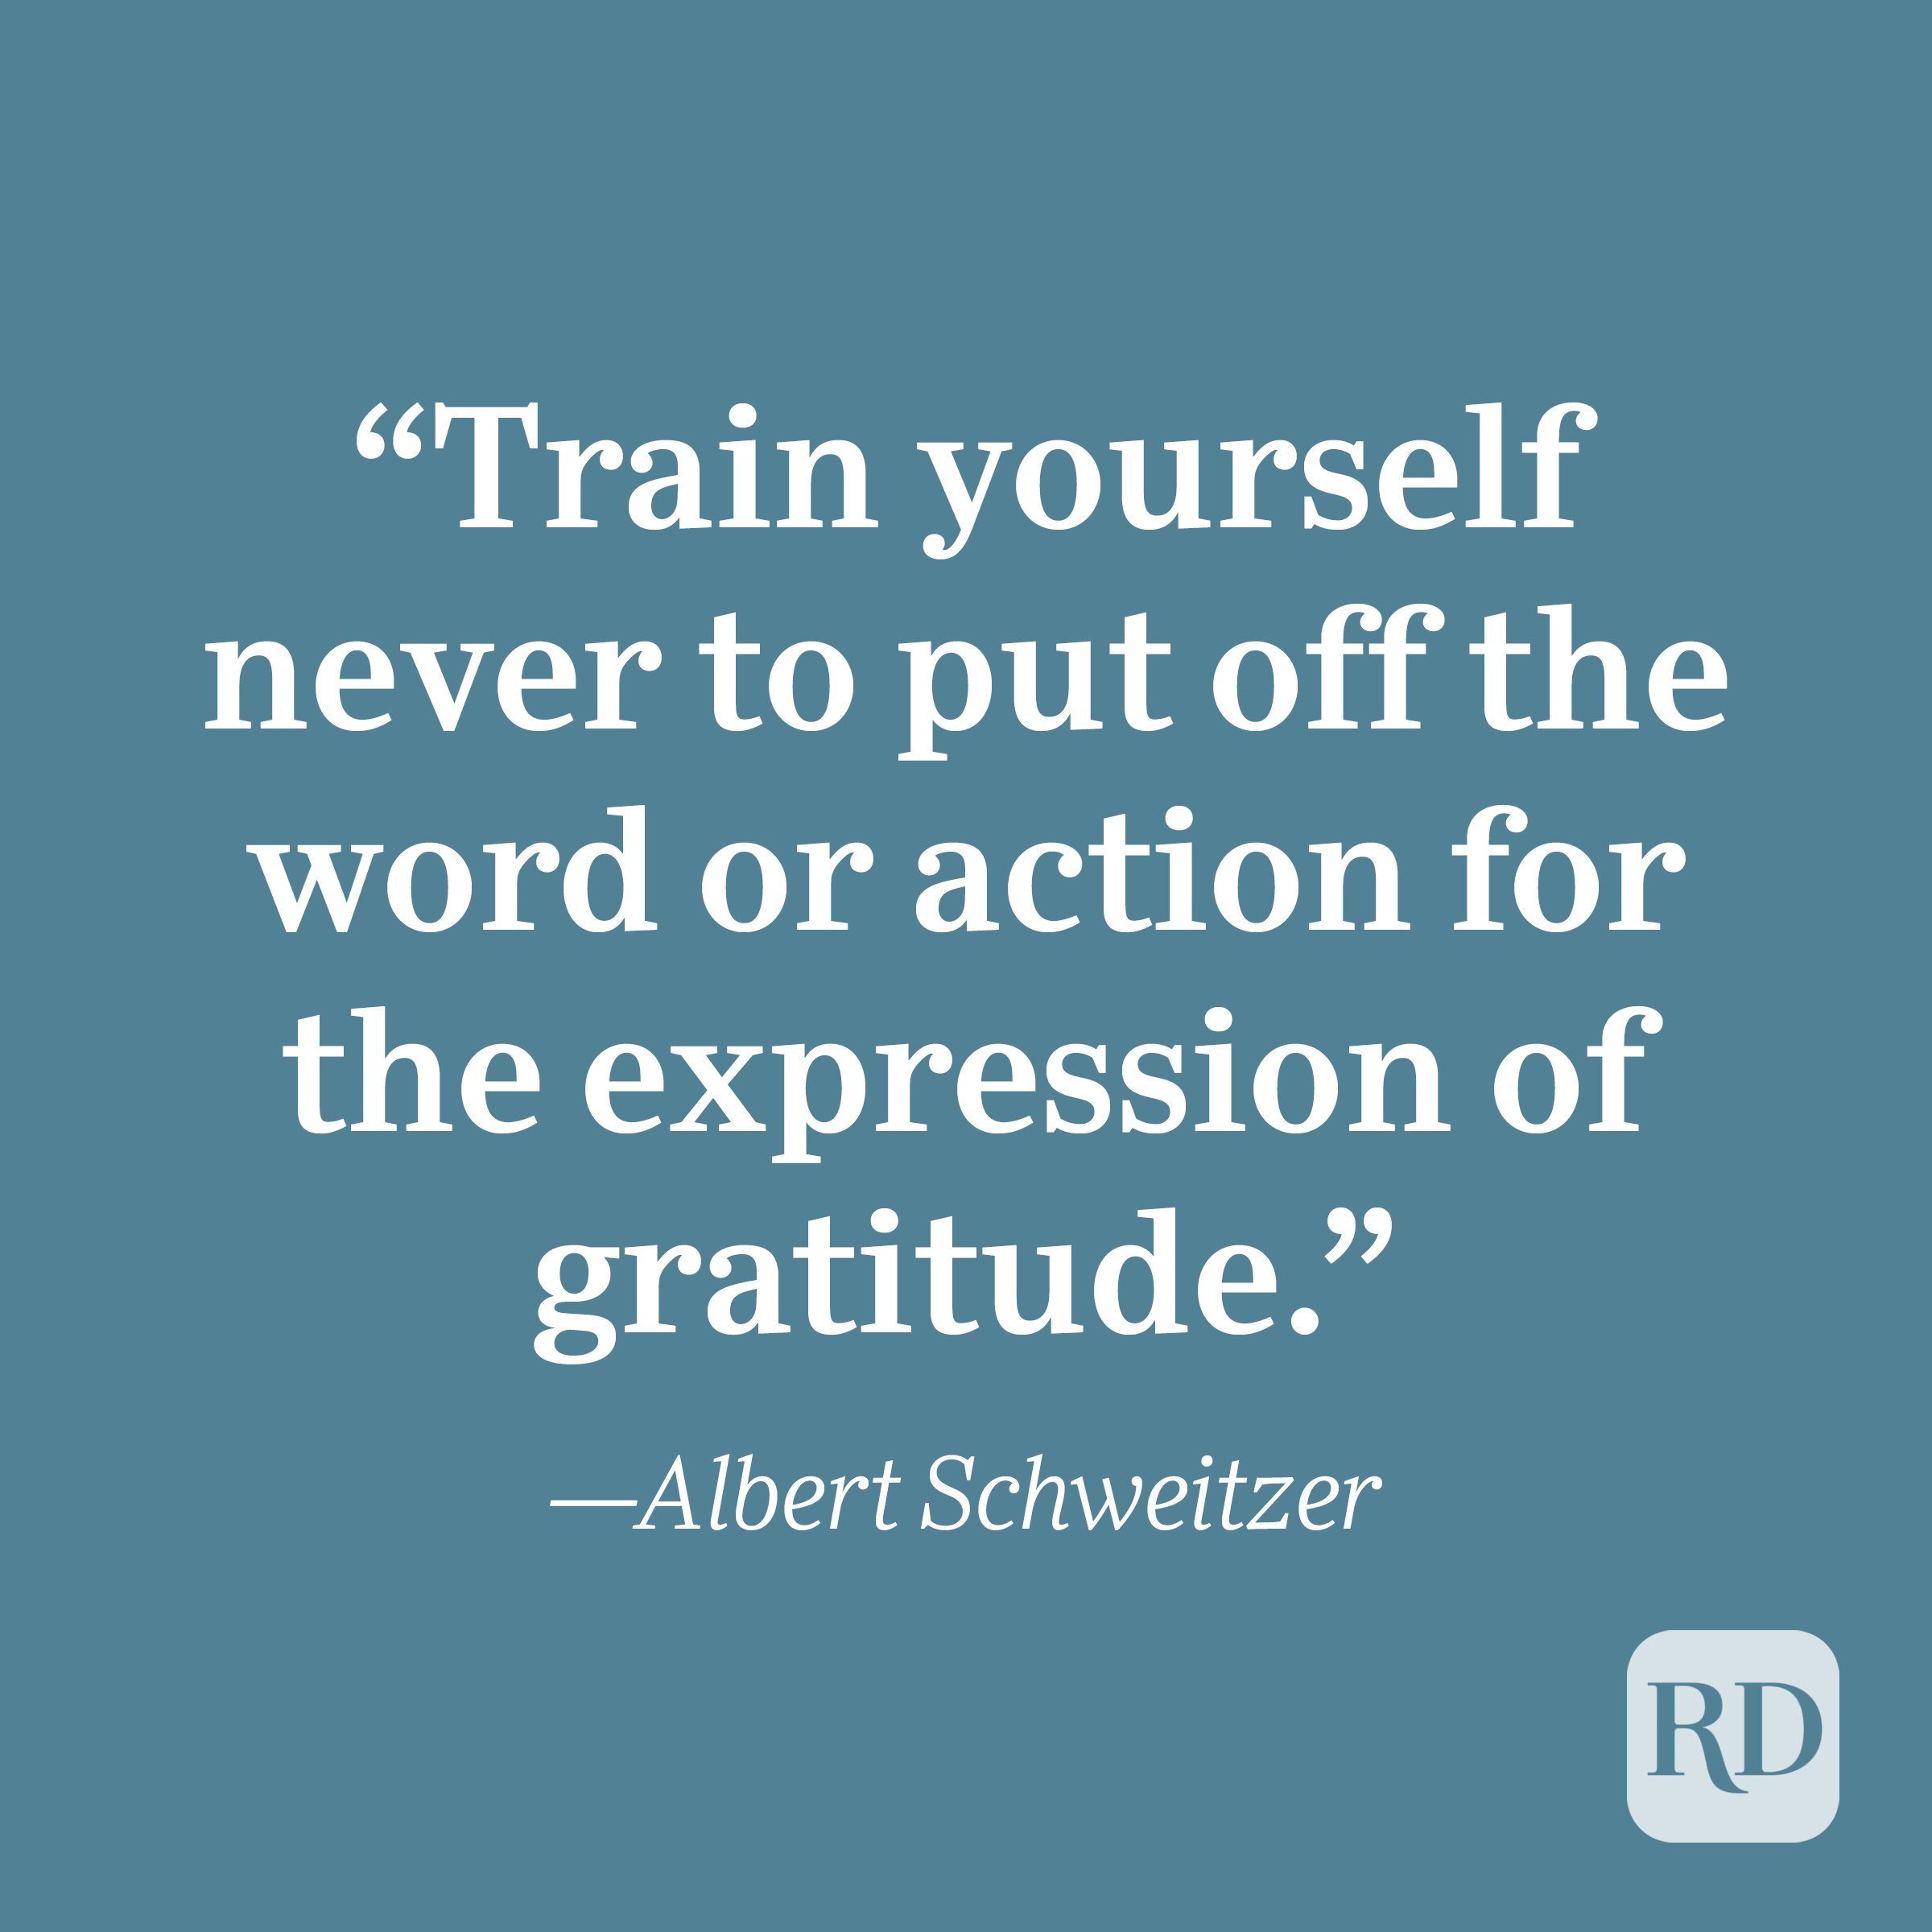 Albert Schweitzer quote about gratitude.